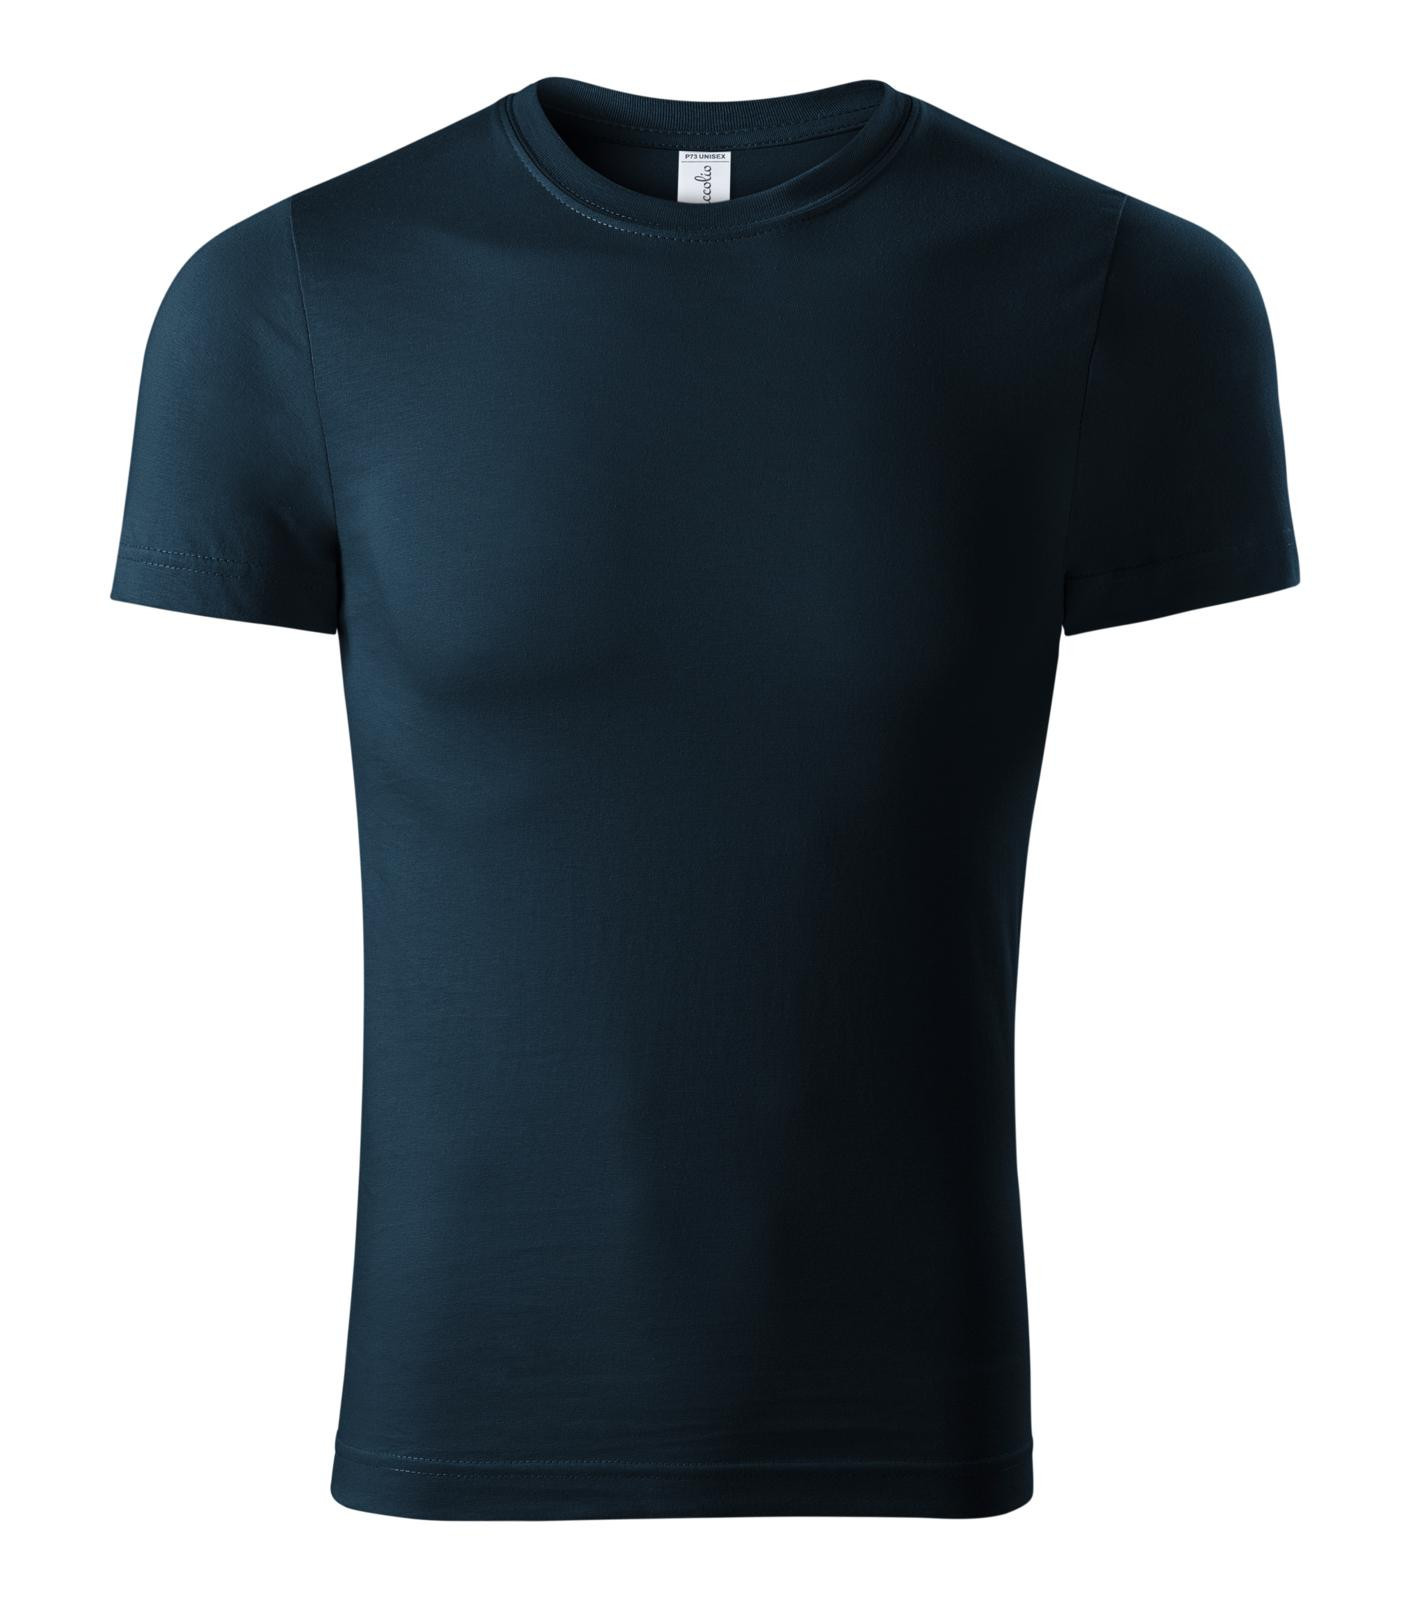 Unisex tričko Piccolio Paint P73 - veľkosť: M, farba: tmavo modrá